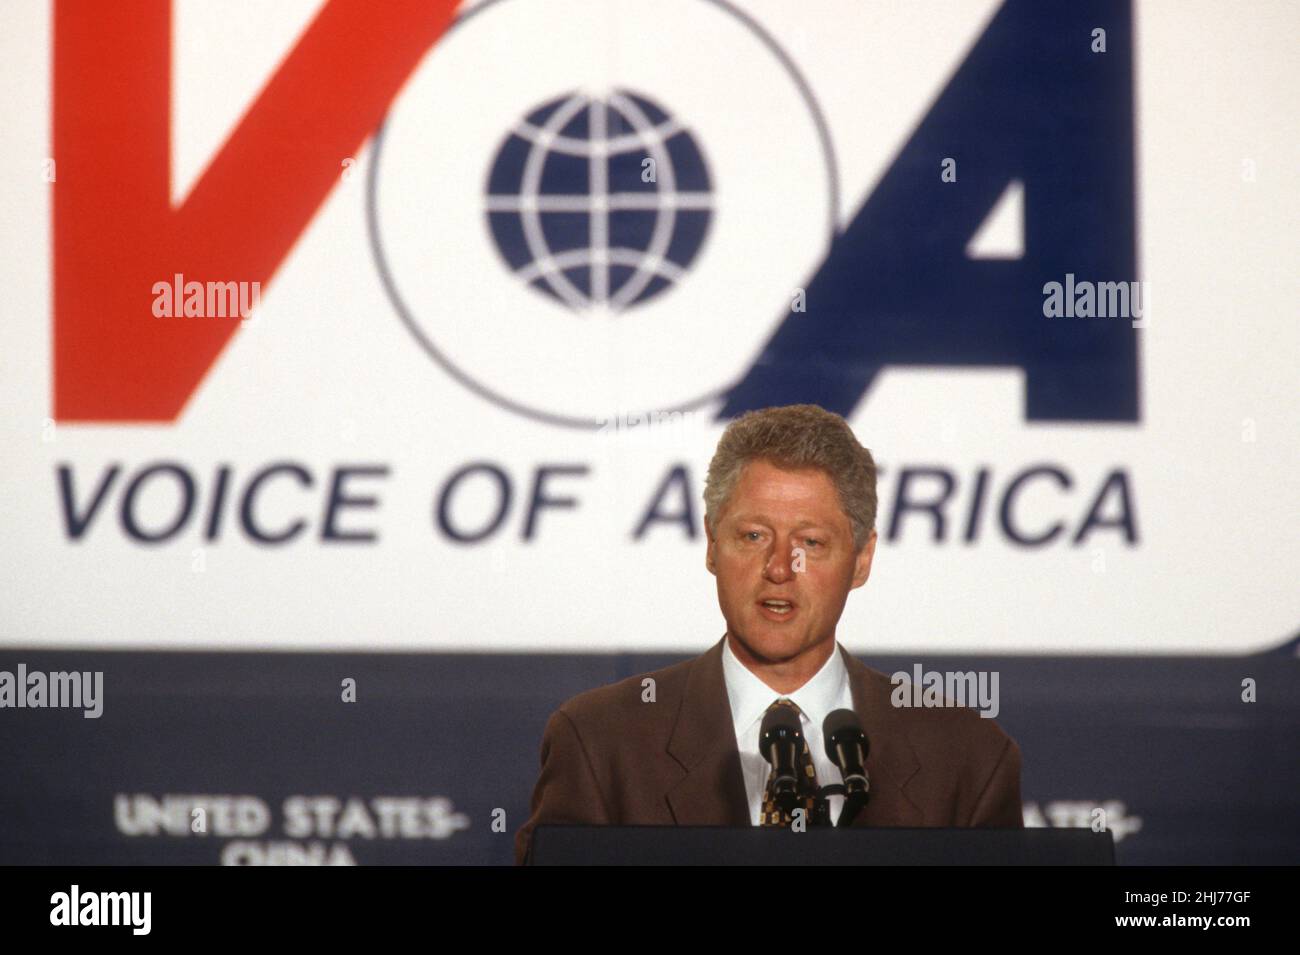 US-Präsident Bill Clinton hält am 24. Oktober 1997 in Washington, D.C. eine außenpolitische Rede zu China und den nationalen Interessen vor dem Hauptquartier der Voice of America. Clinton verteidigte seinen Drücker für bessere Beziehungen zu China. Stockfoto